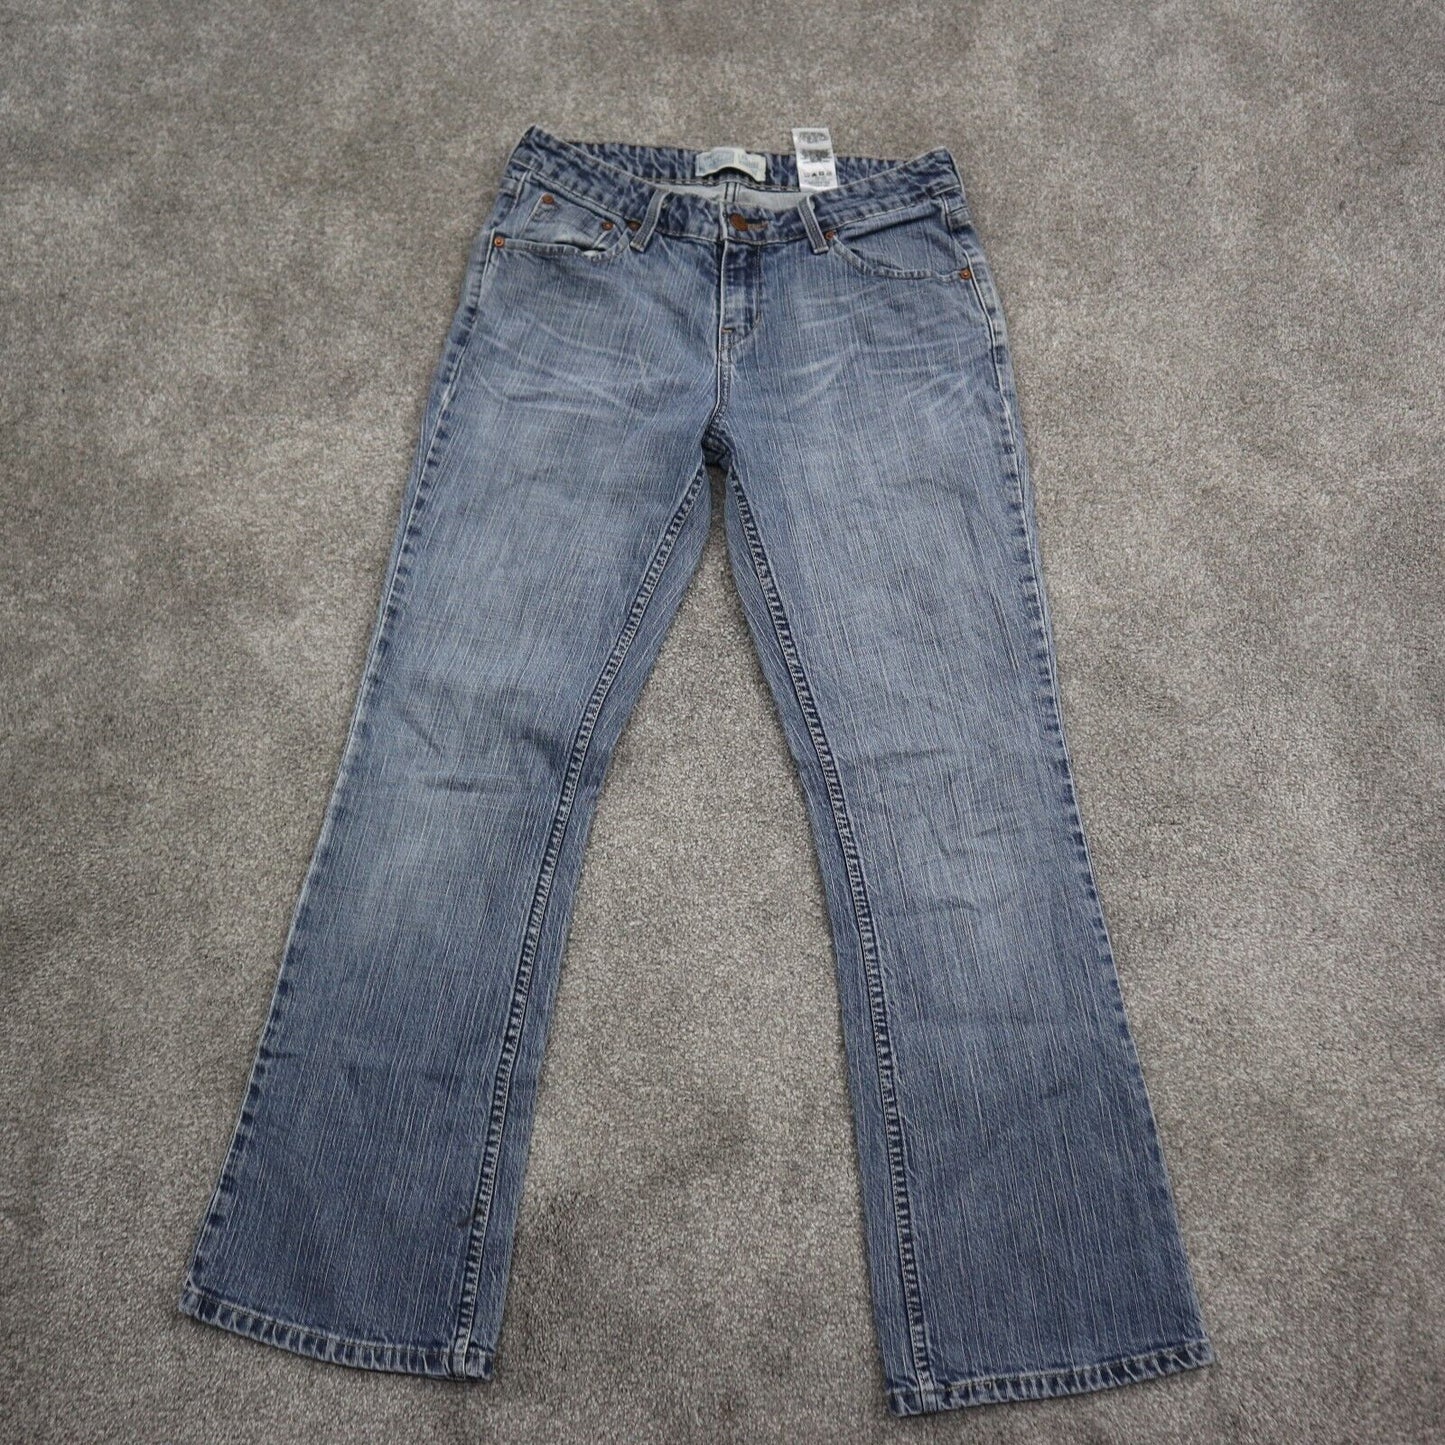 Levis Womens Jeans Bootcut Leg Denim Stretch Low Rise Pockets Blue Size 8